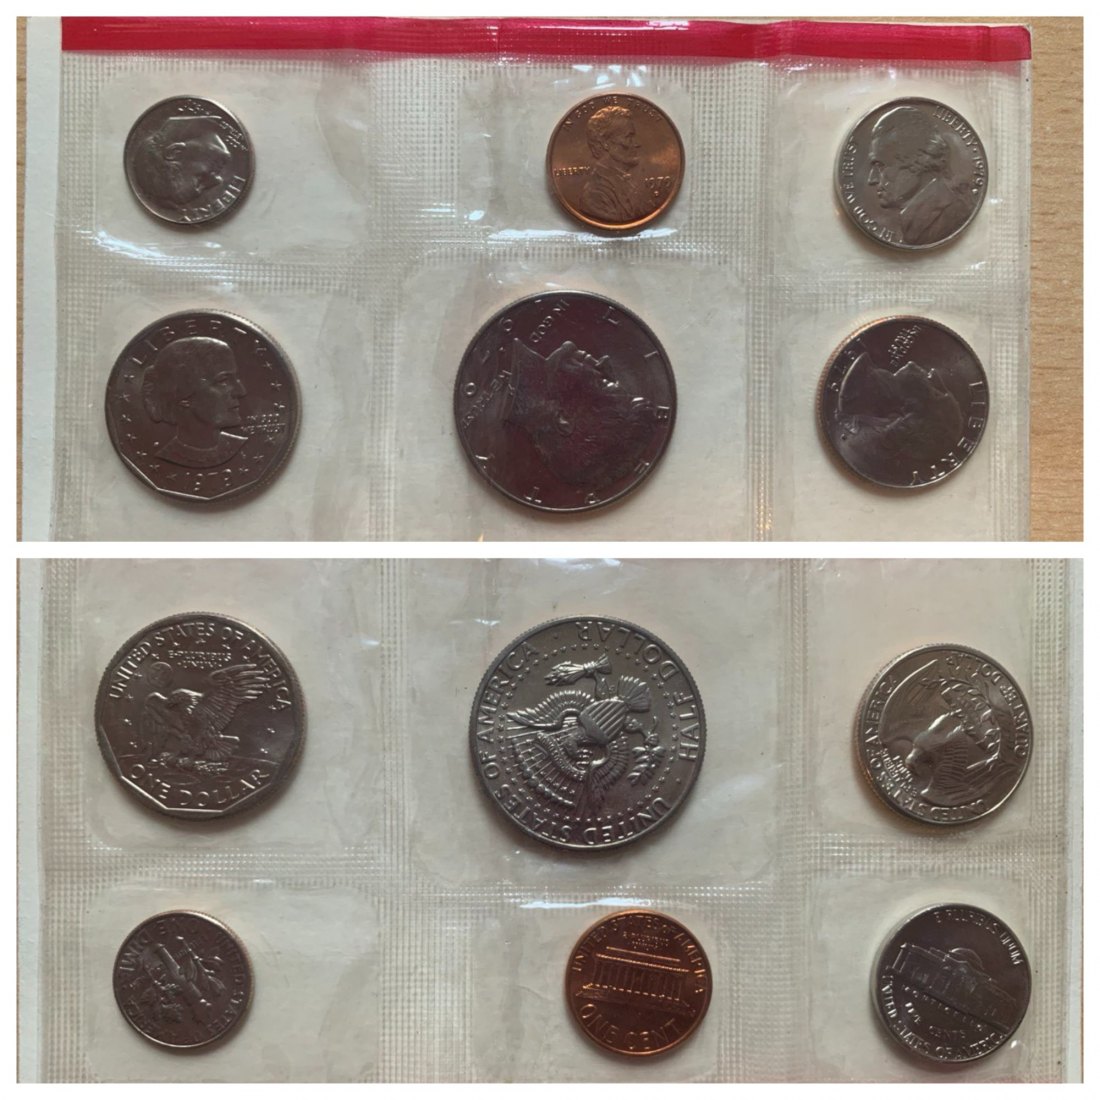  USA 1979 MINT SET D Uncirculated (6 coins)   